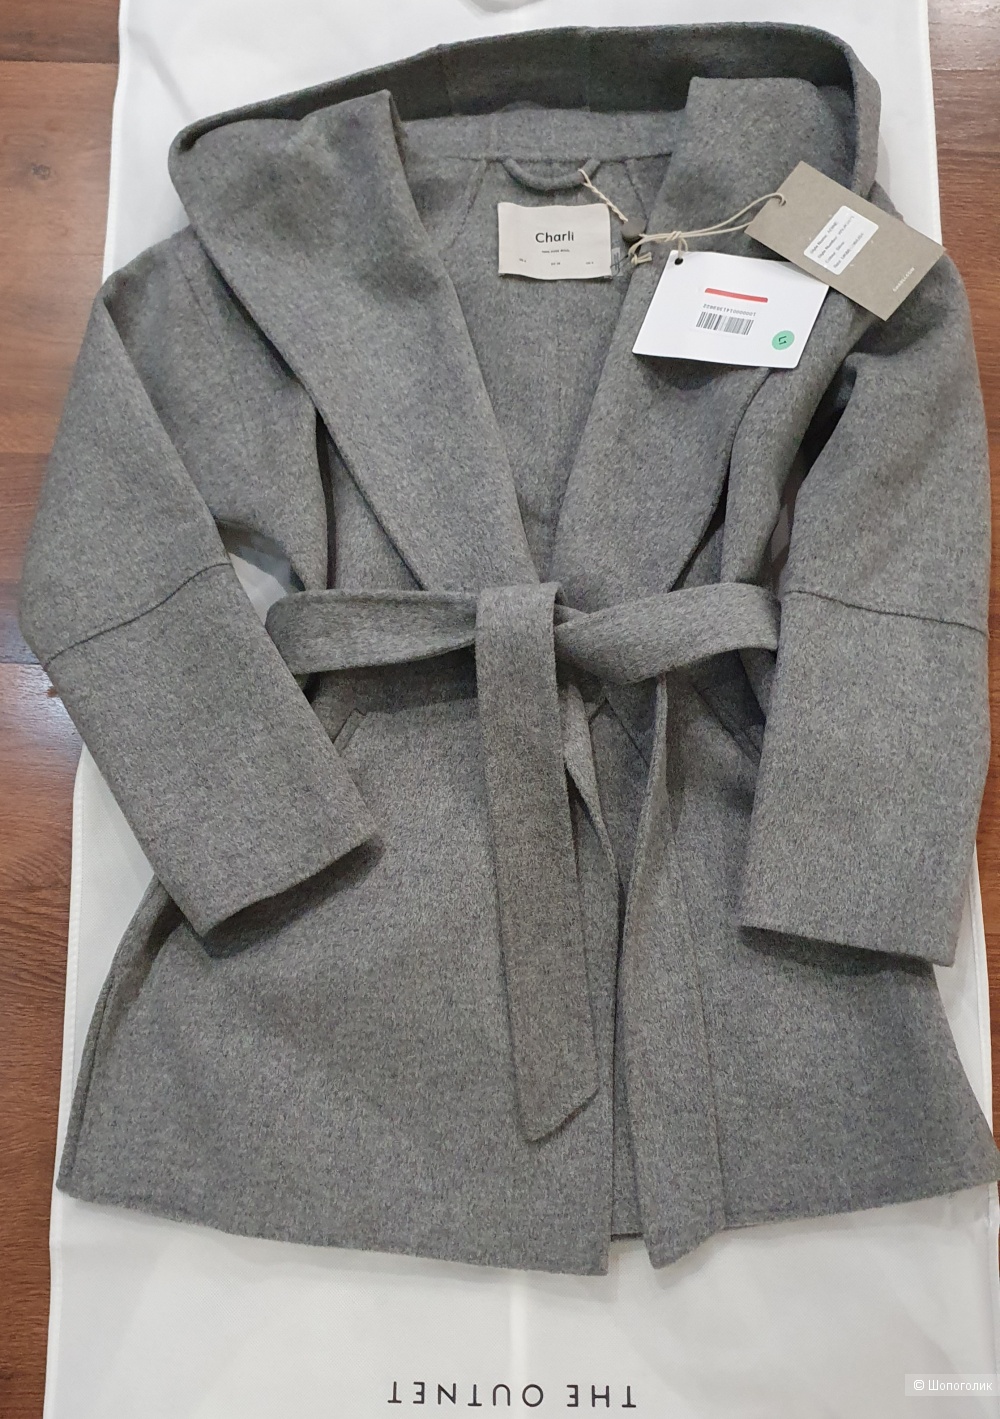 Пальто Charli, 8 uk, 42-44 размер